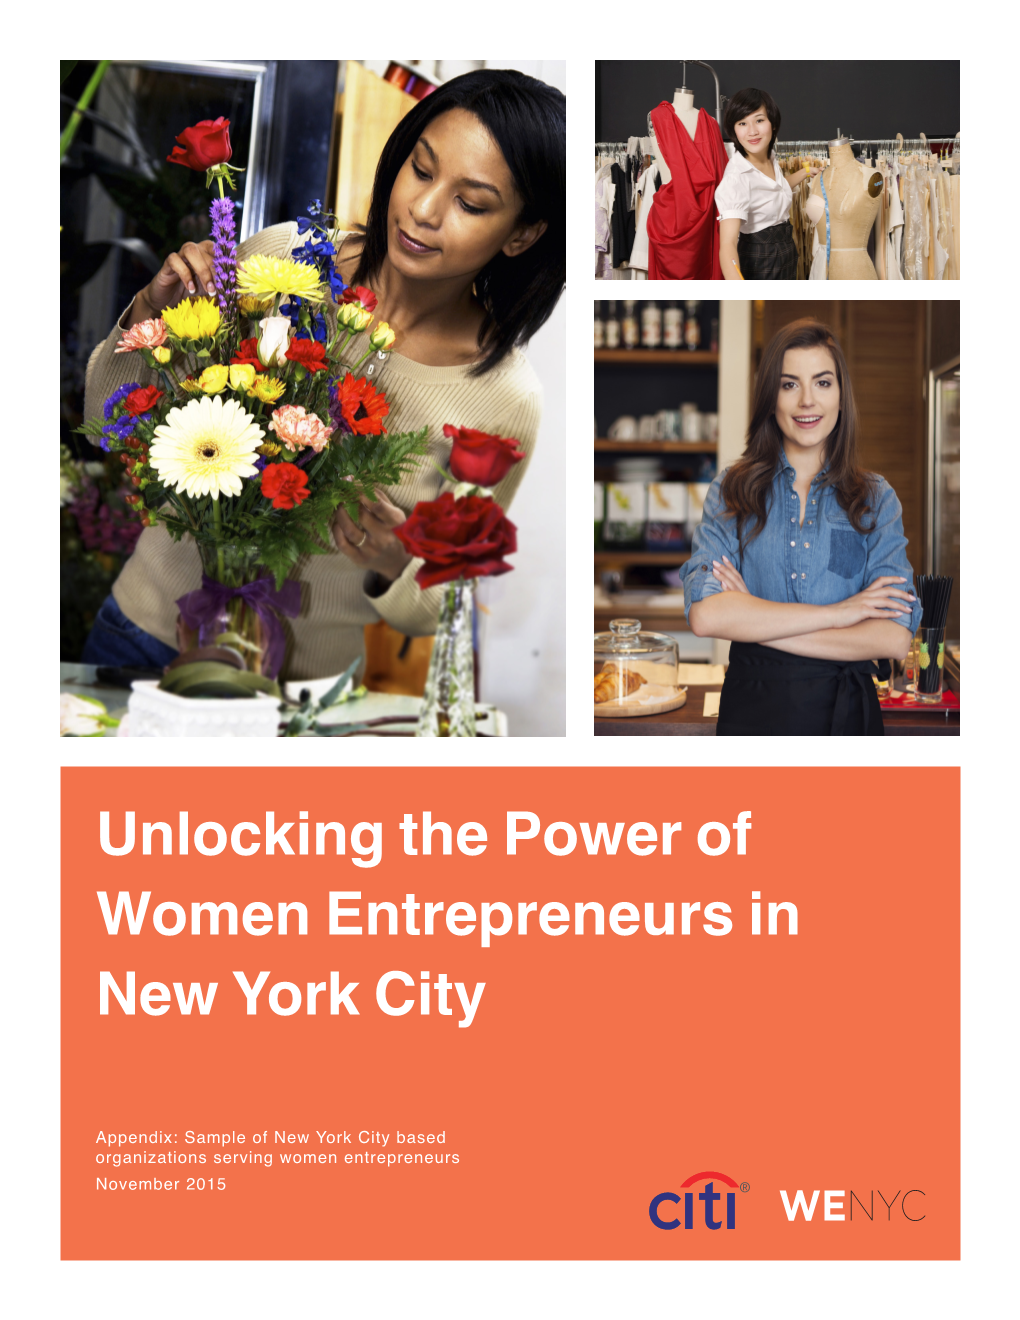 Unlocking the Power of Women Entrepreneurs in New York City